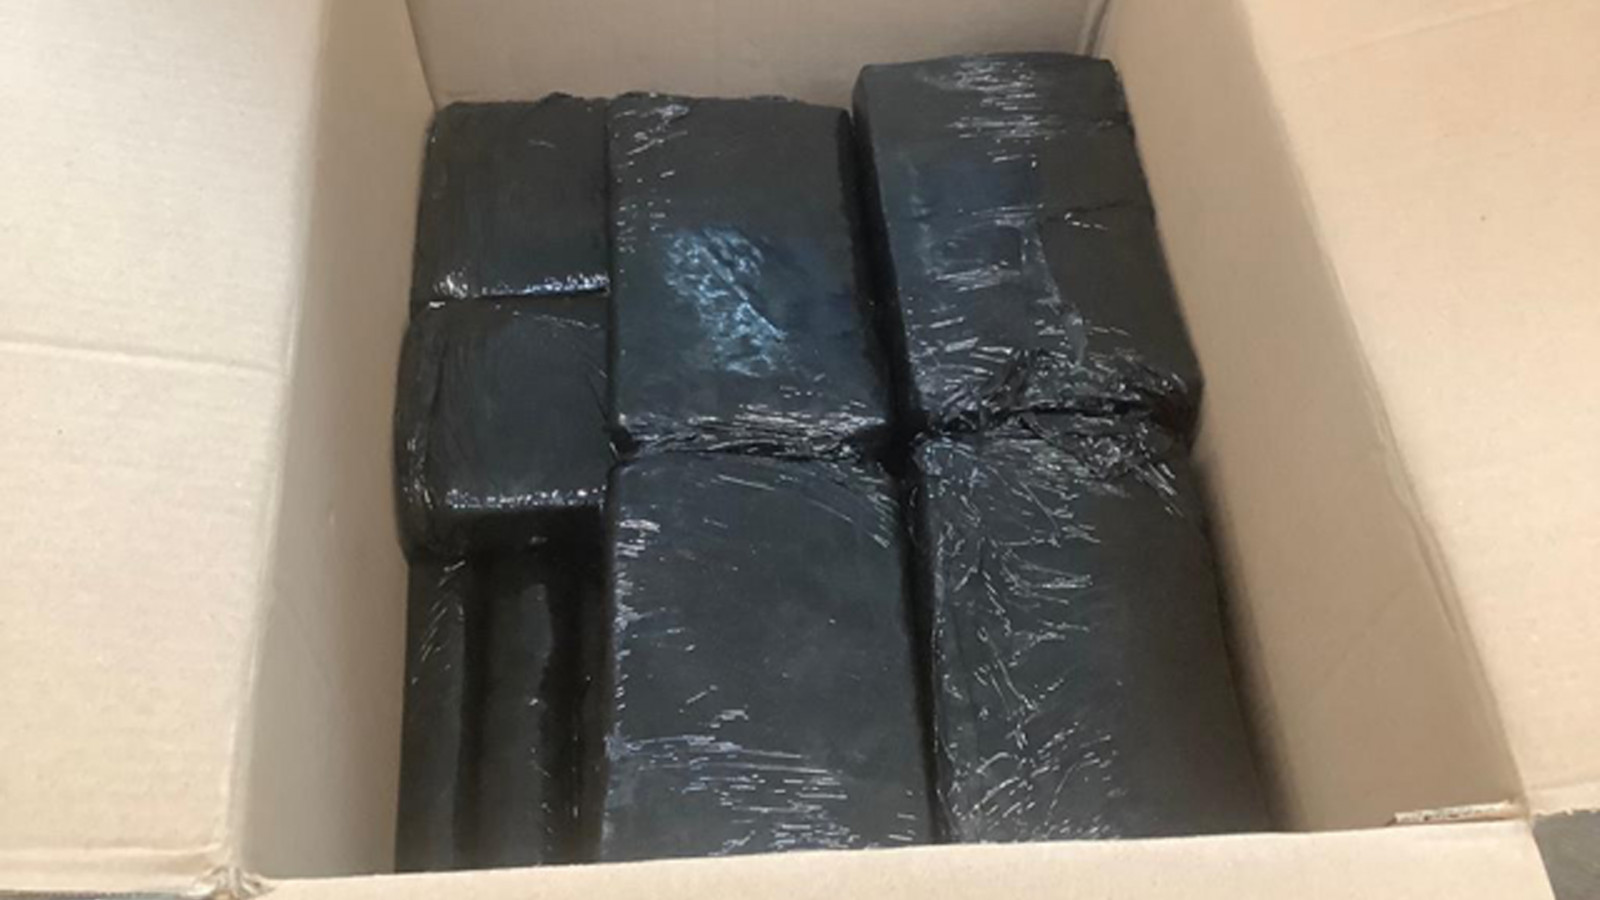 50 kilo cocaïne in beslag genomen op Schiphol